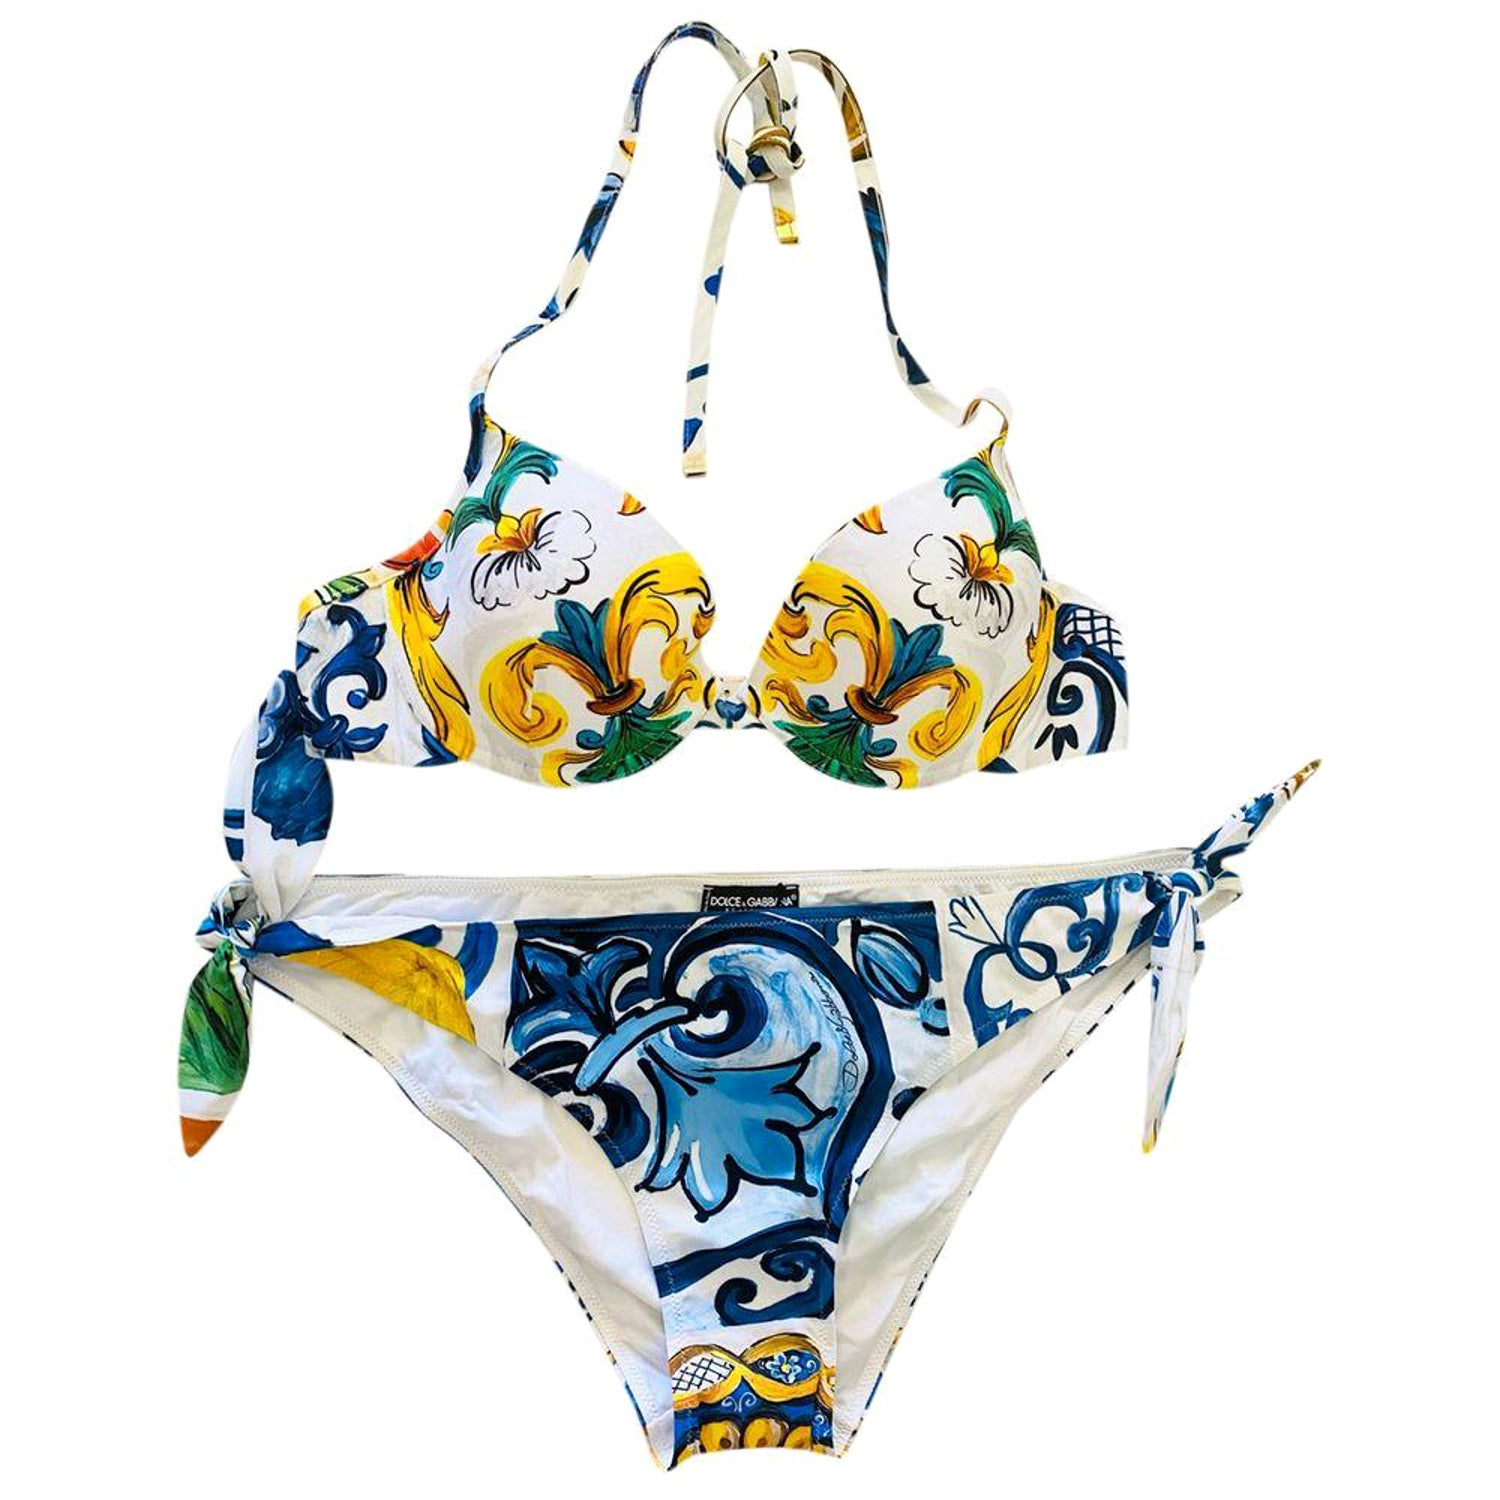 Vivienne Westwood Bikini - For Sale on 1stDibs